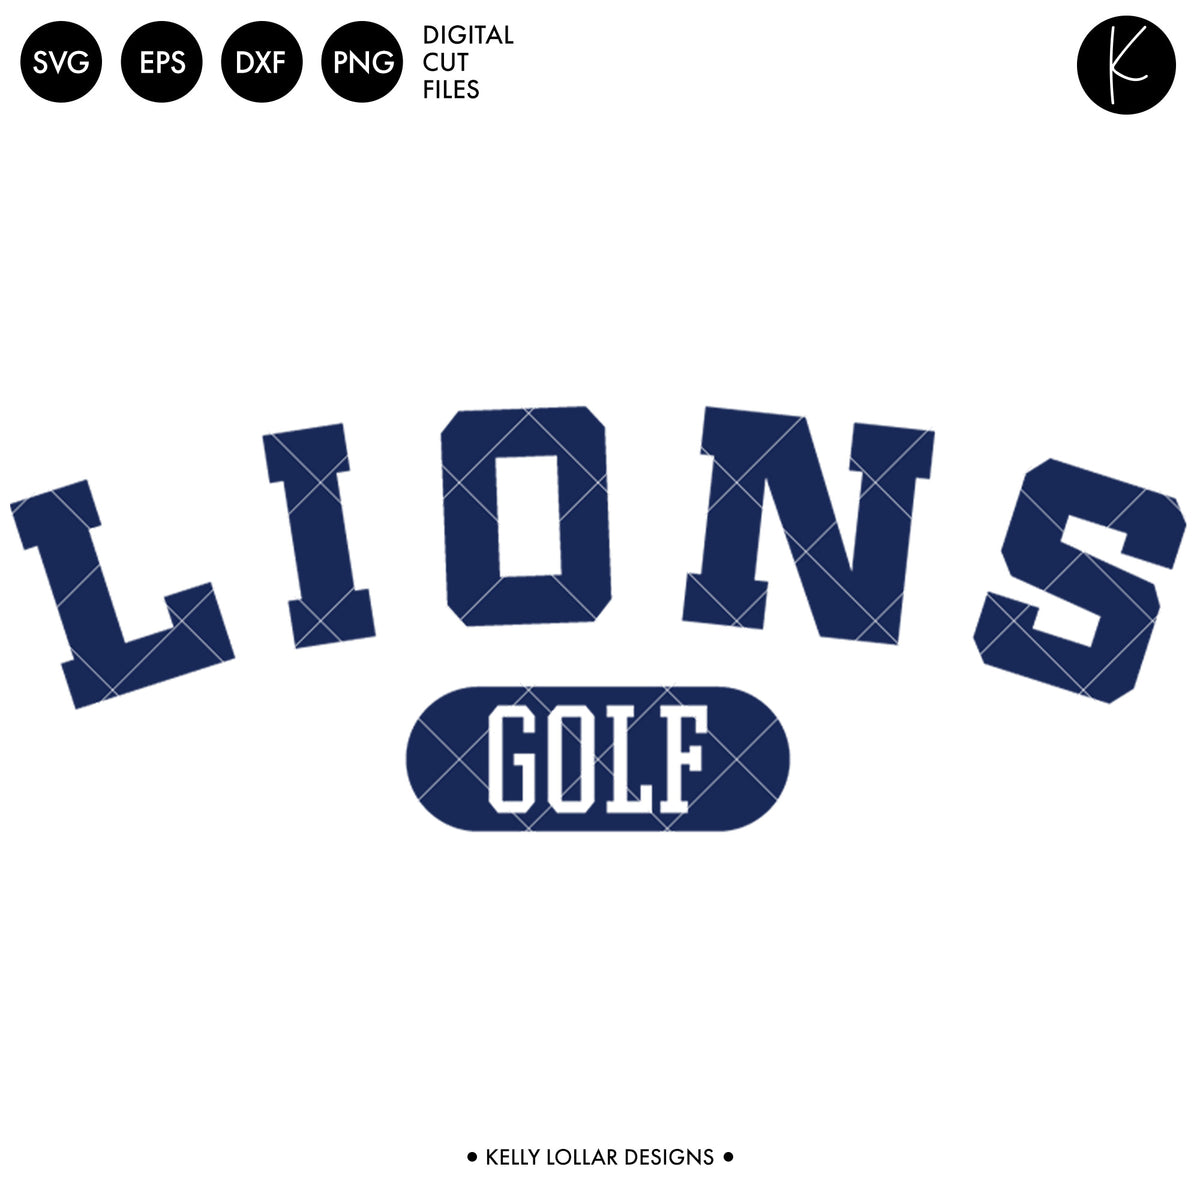 Lions Golf Bundle | SVG DXF EPS PNG Cut Files